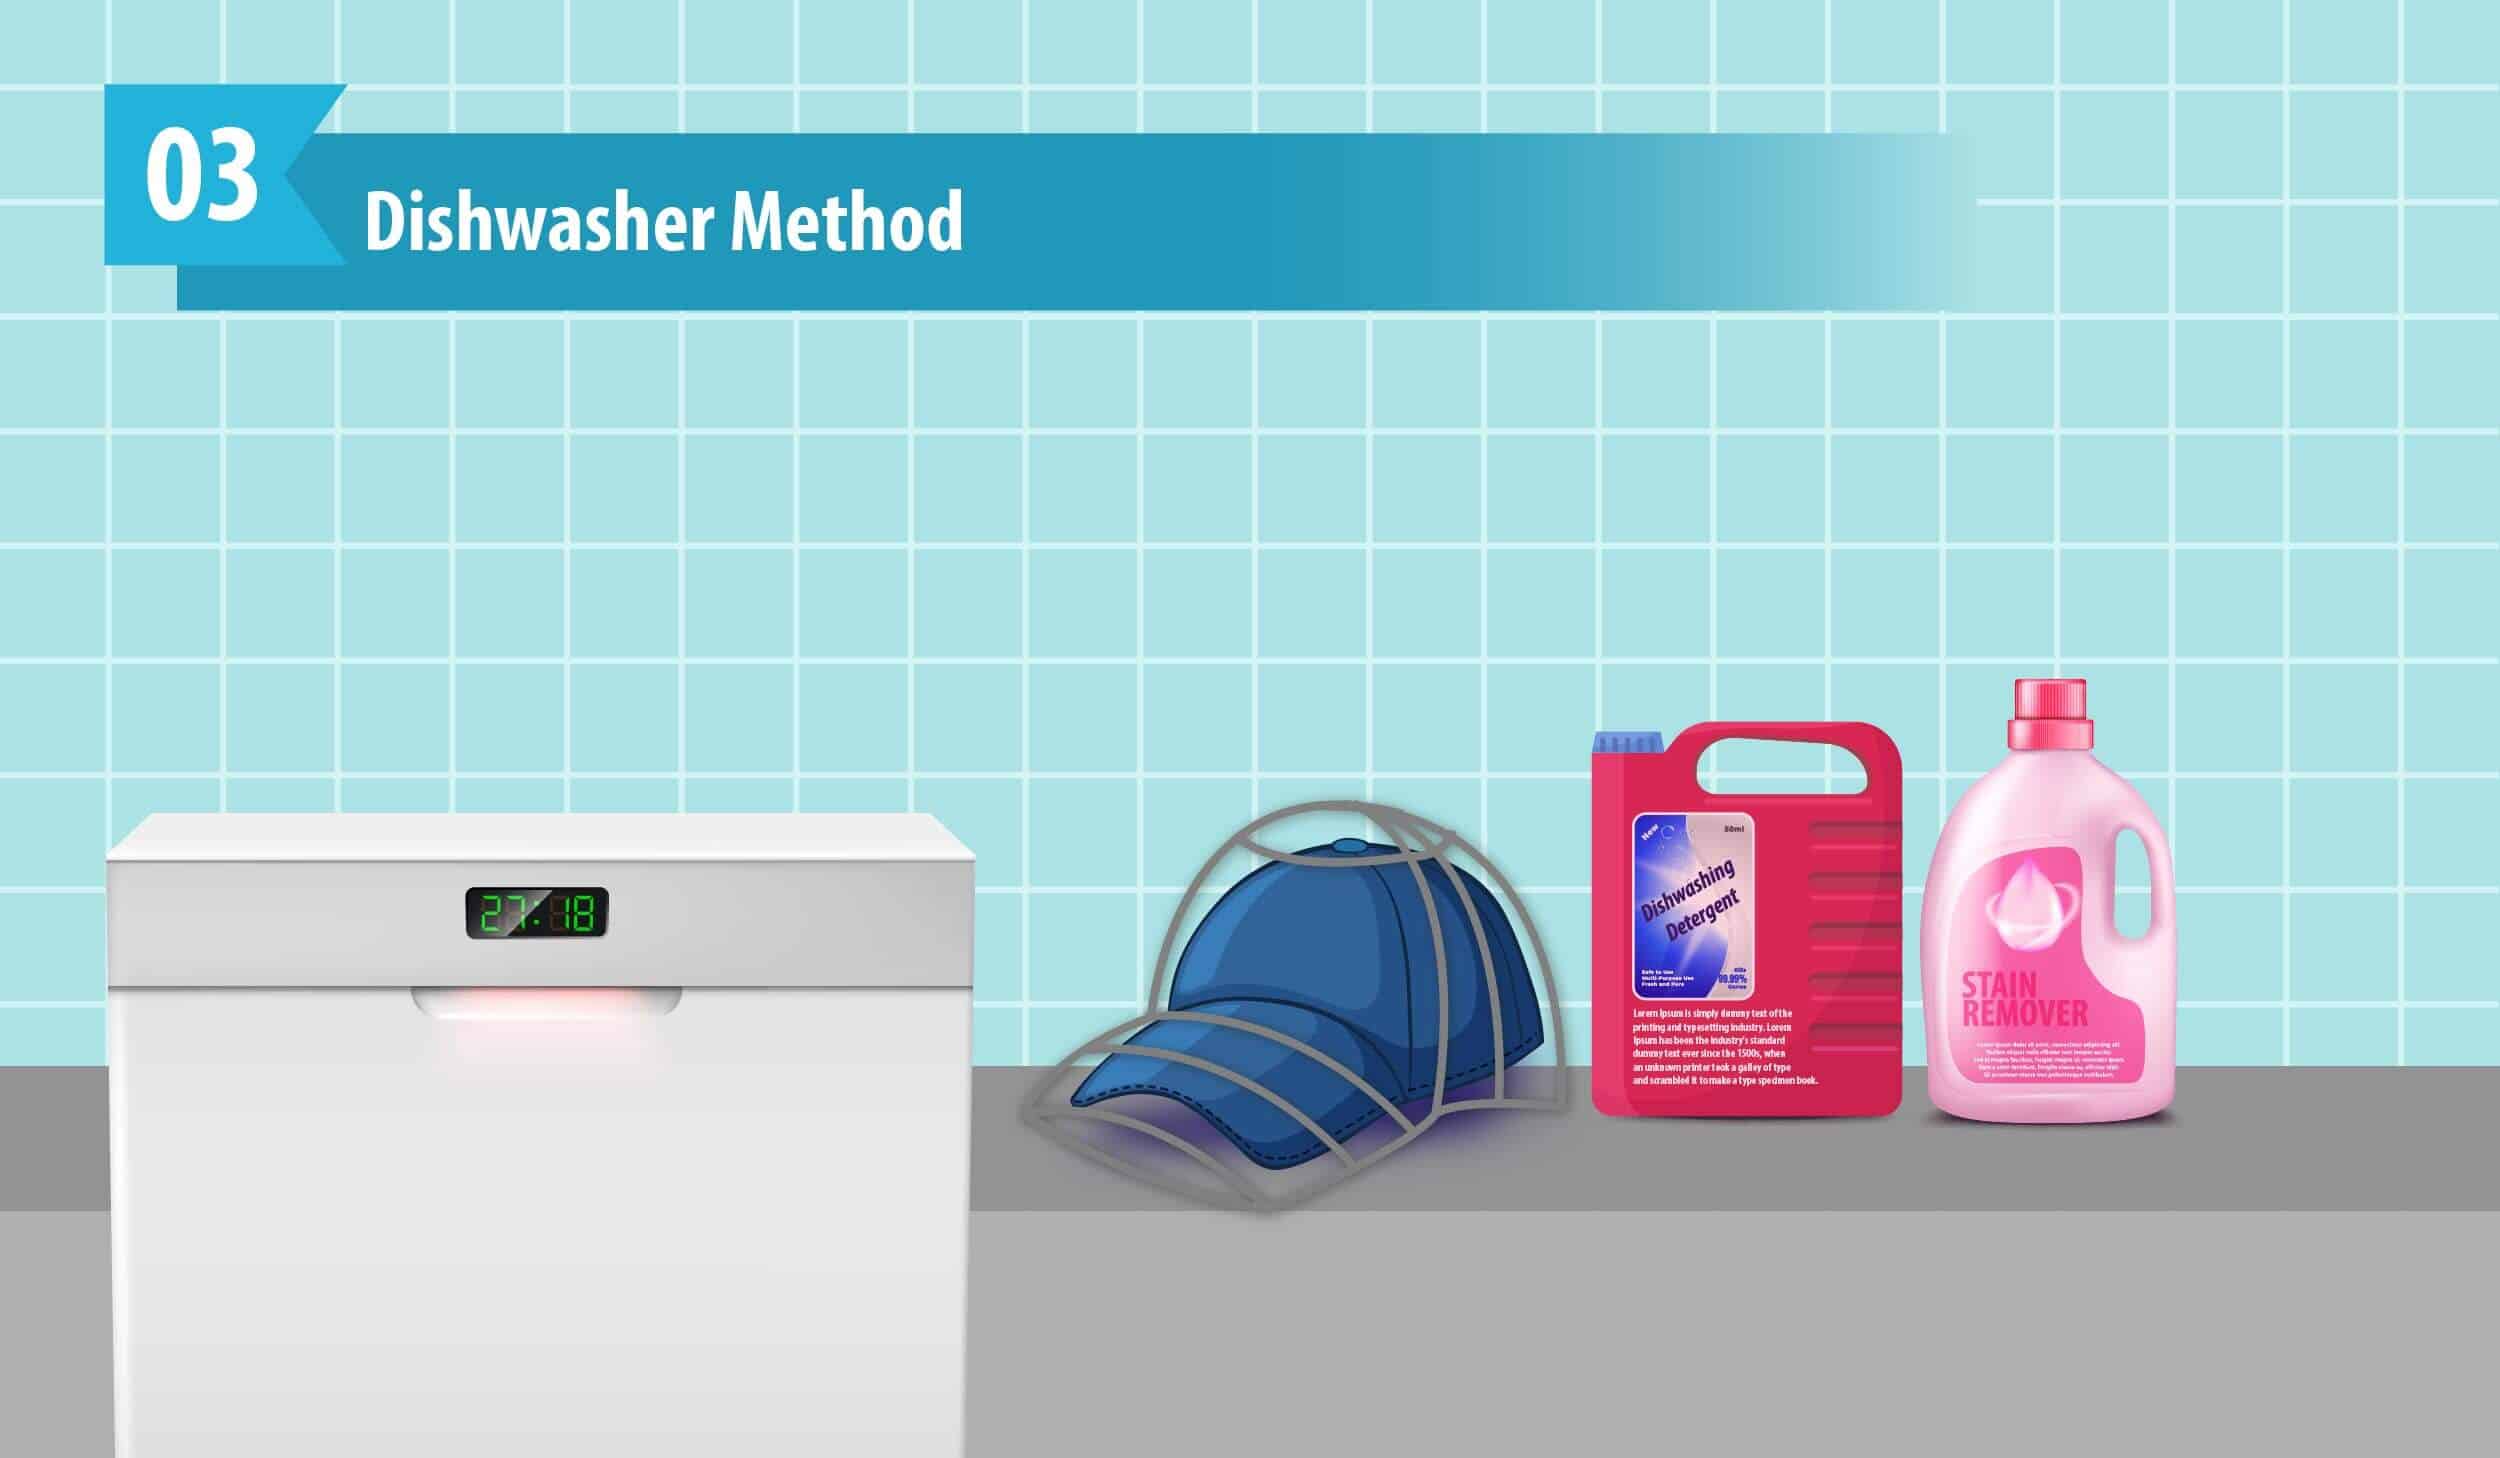 Dishwasher Method